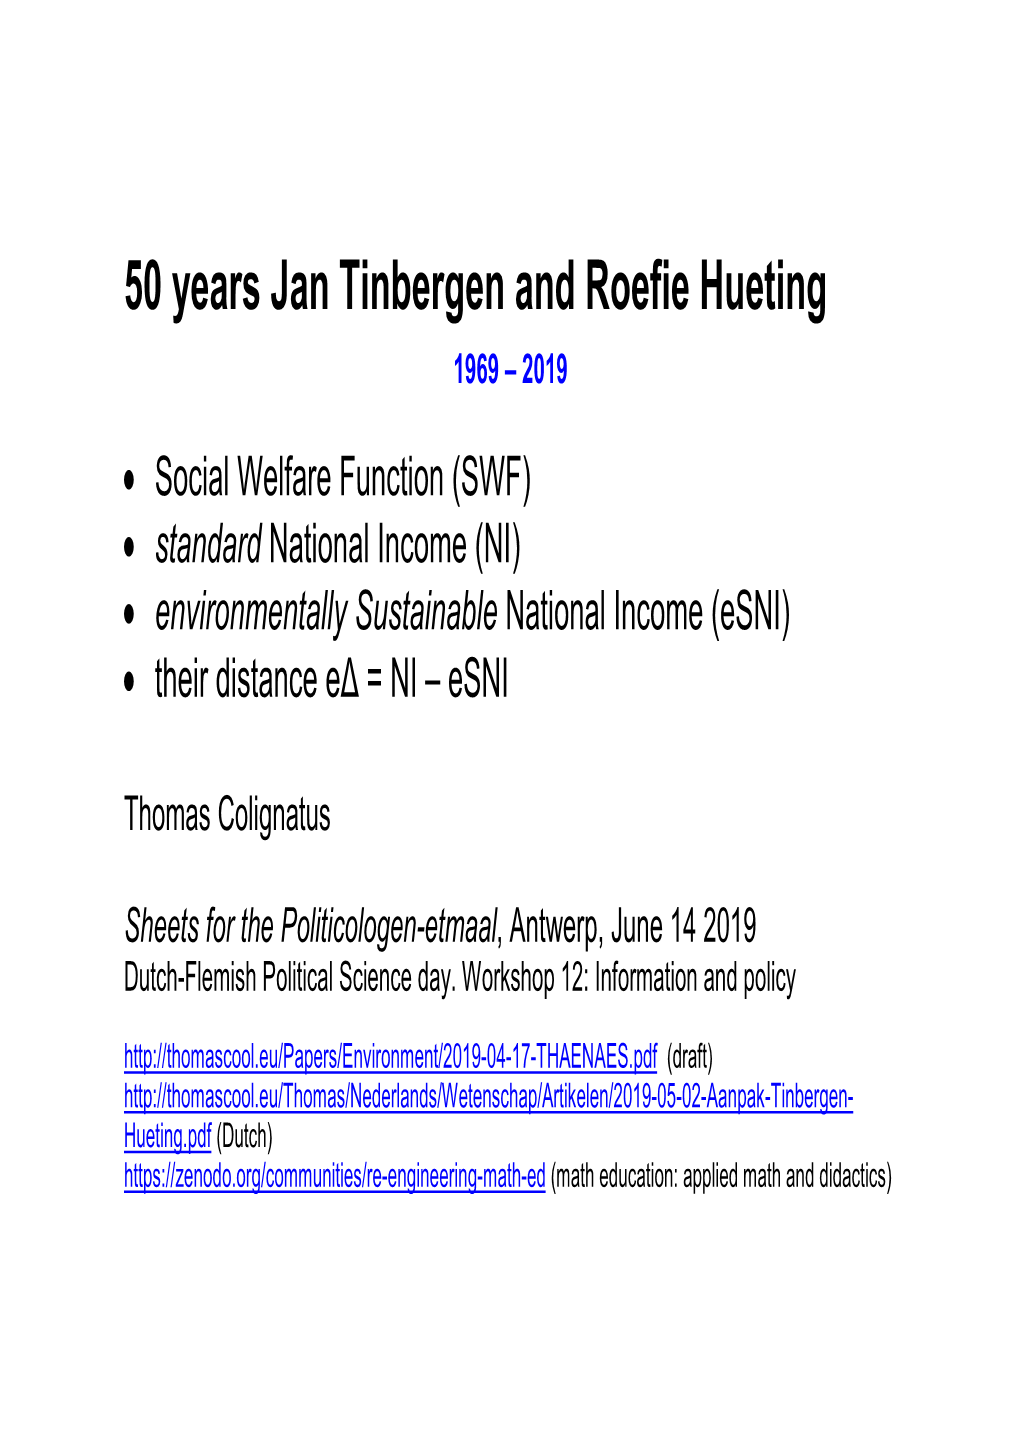 50 Years Jan Tinbergen and Roefie Hueting 1969 – 2019